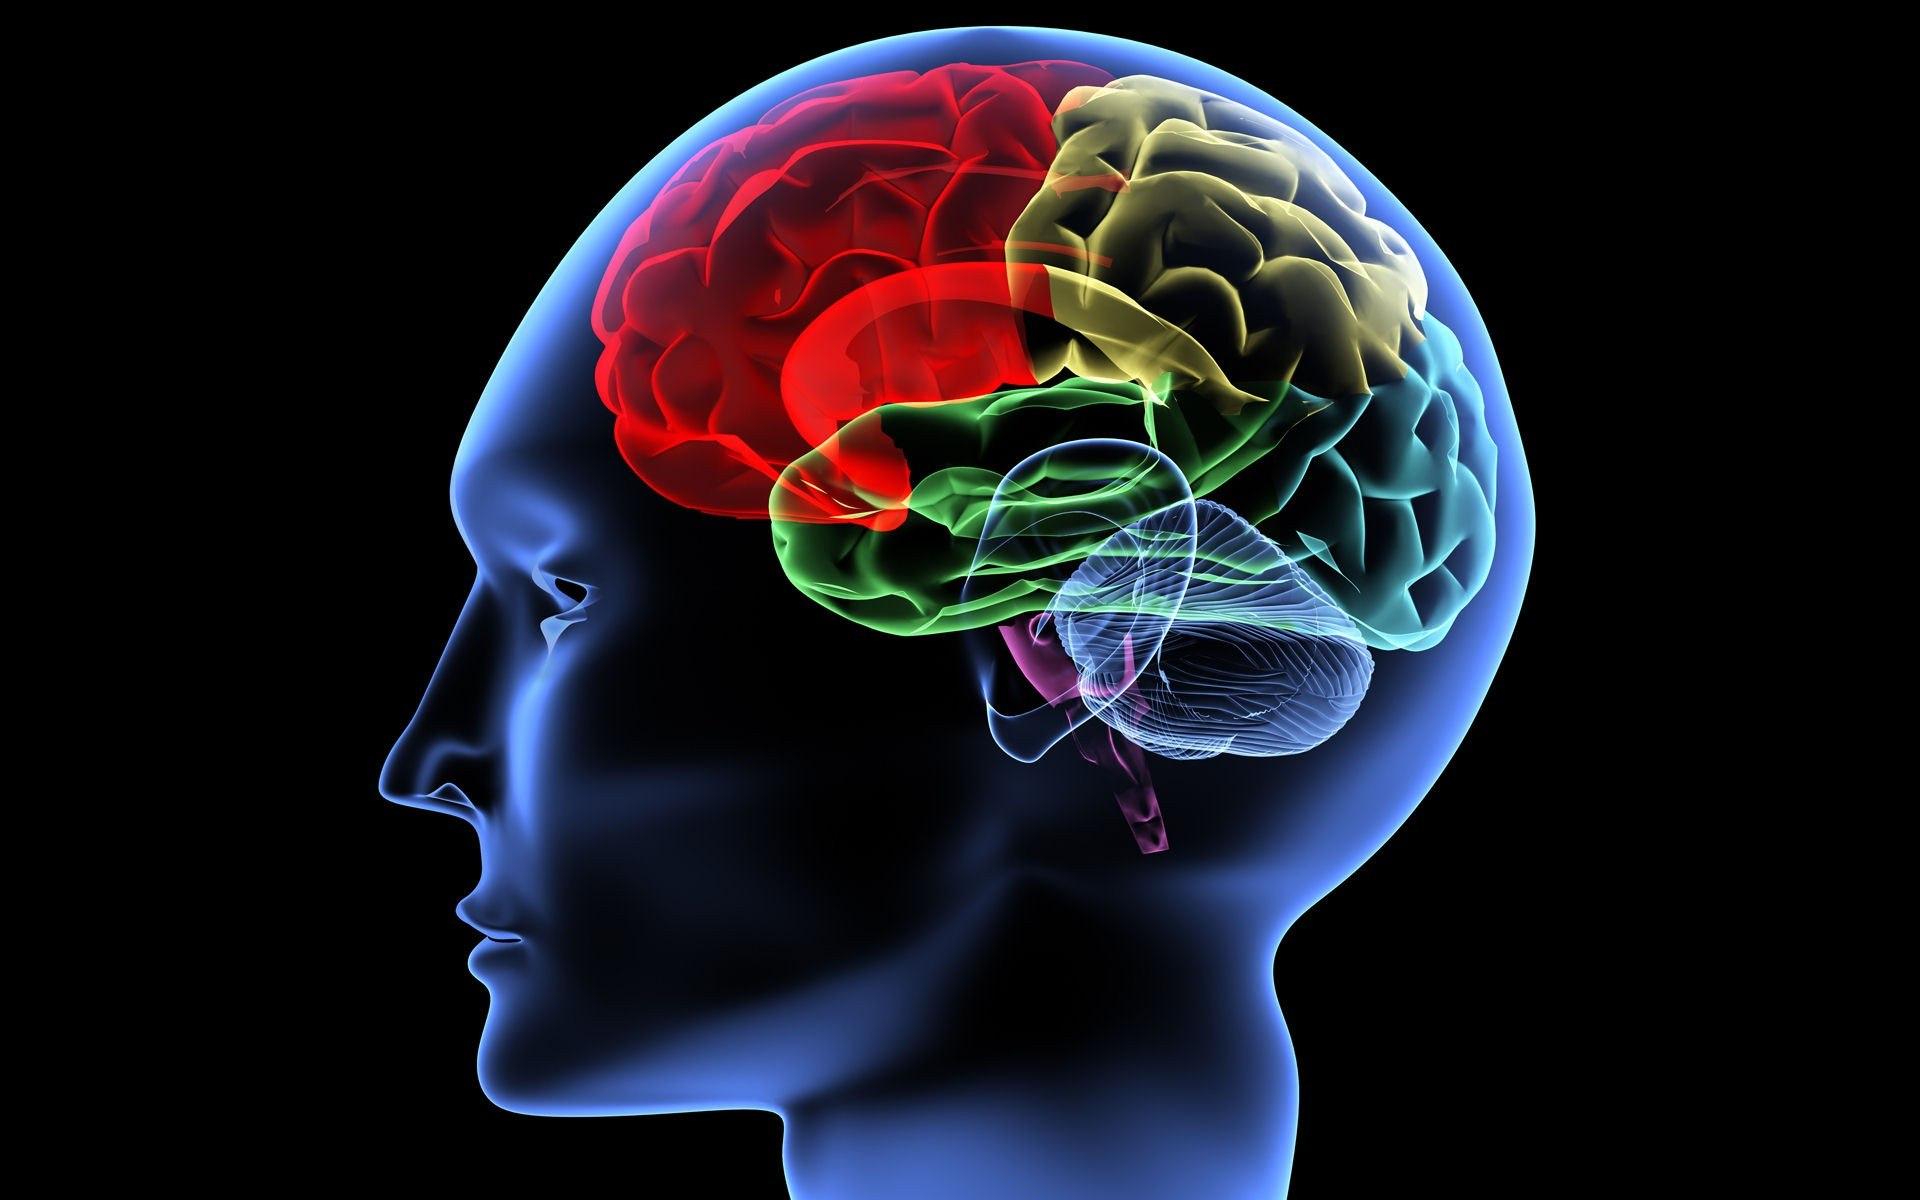 Качества головного мозга. Изображение мозга человека. Мозг картинка. Развитый головной мозг.